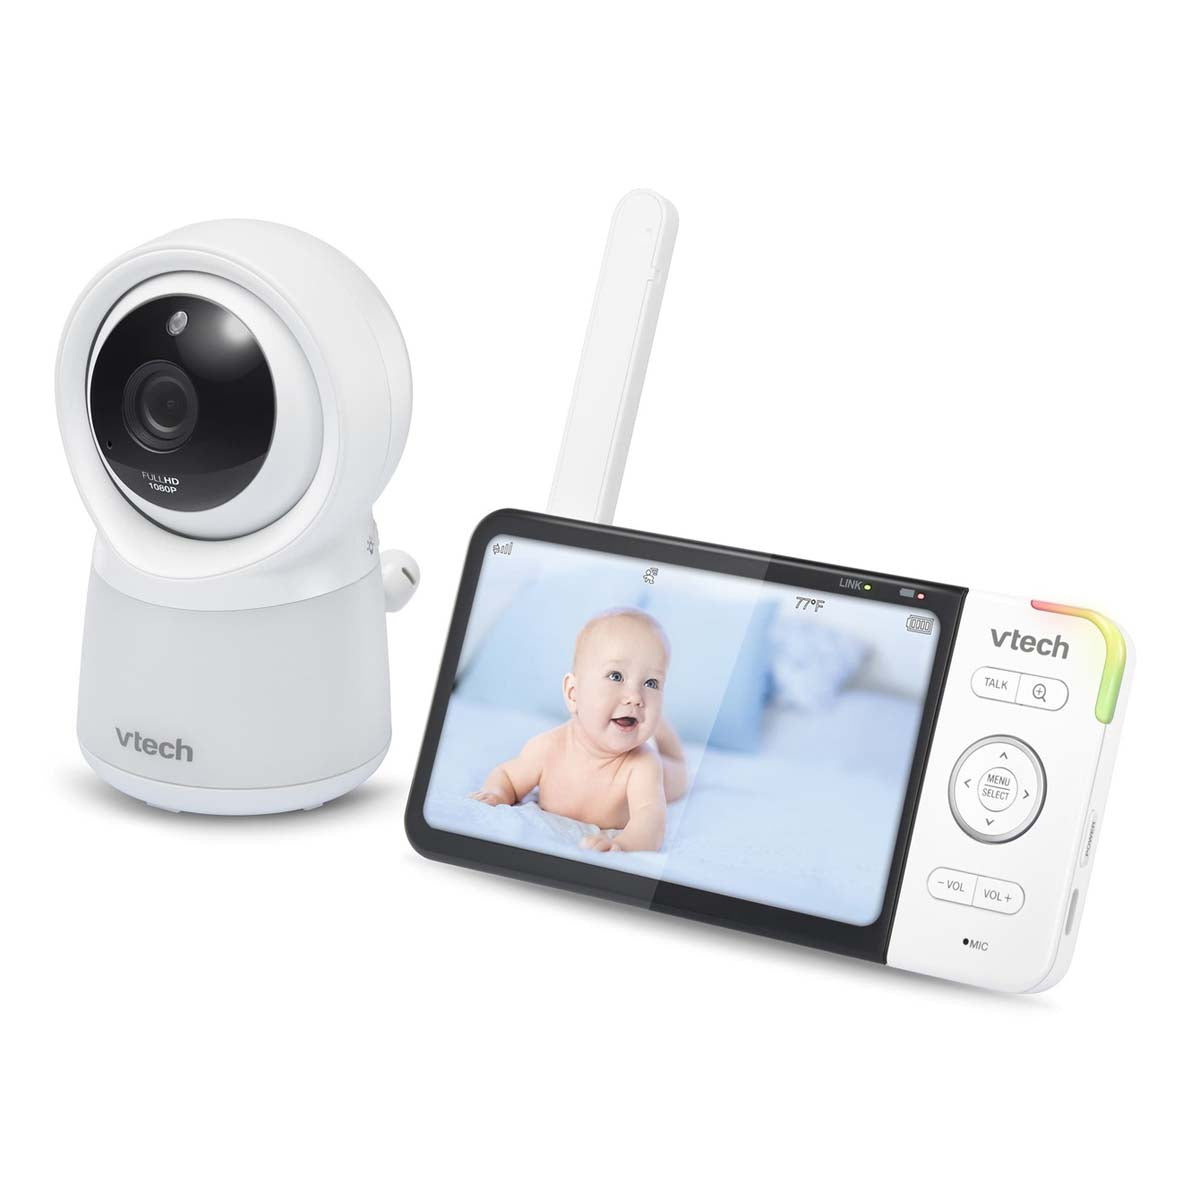 Dit is de Vtech babyfoon HD video Wi-Fi RM 5754, een video-babyfoon met HD-scherm en Wifi, die je kunt bedienen met de MyVtech Baby Pro-applicatie op je smartphone of tablet. Zo kan je je kindje overal horen en zien. VanZus.